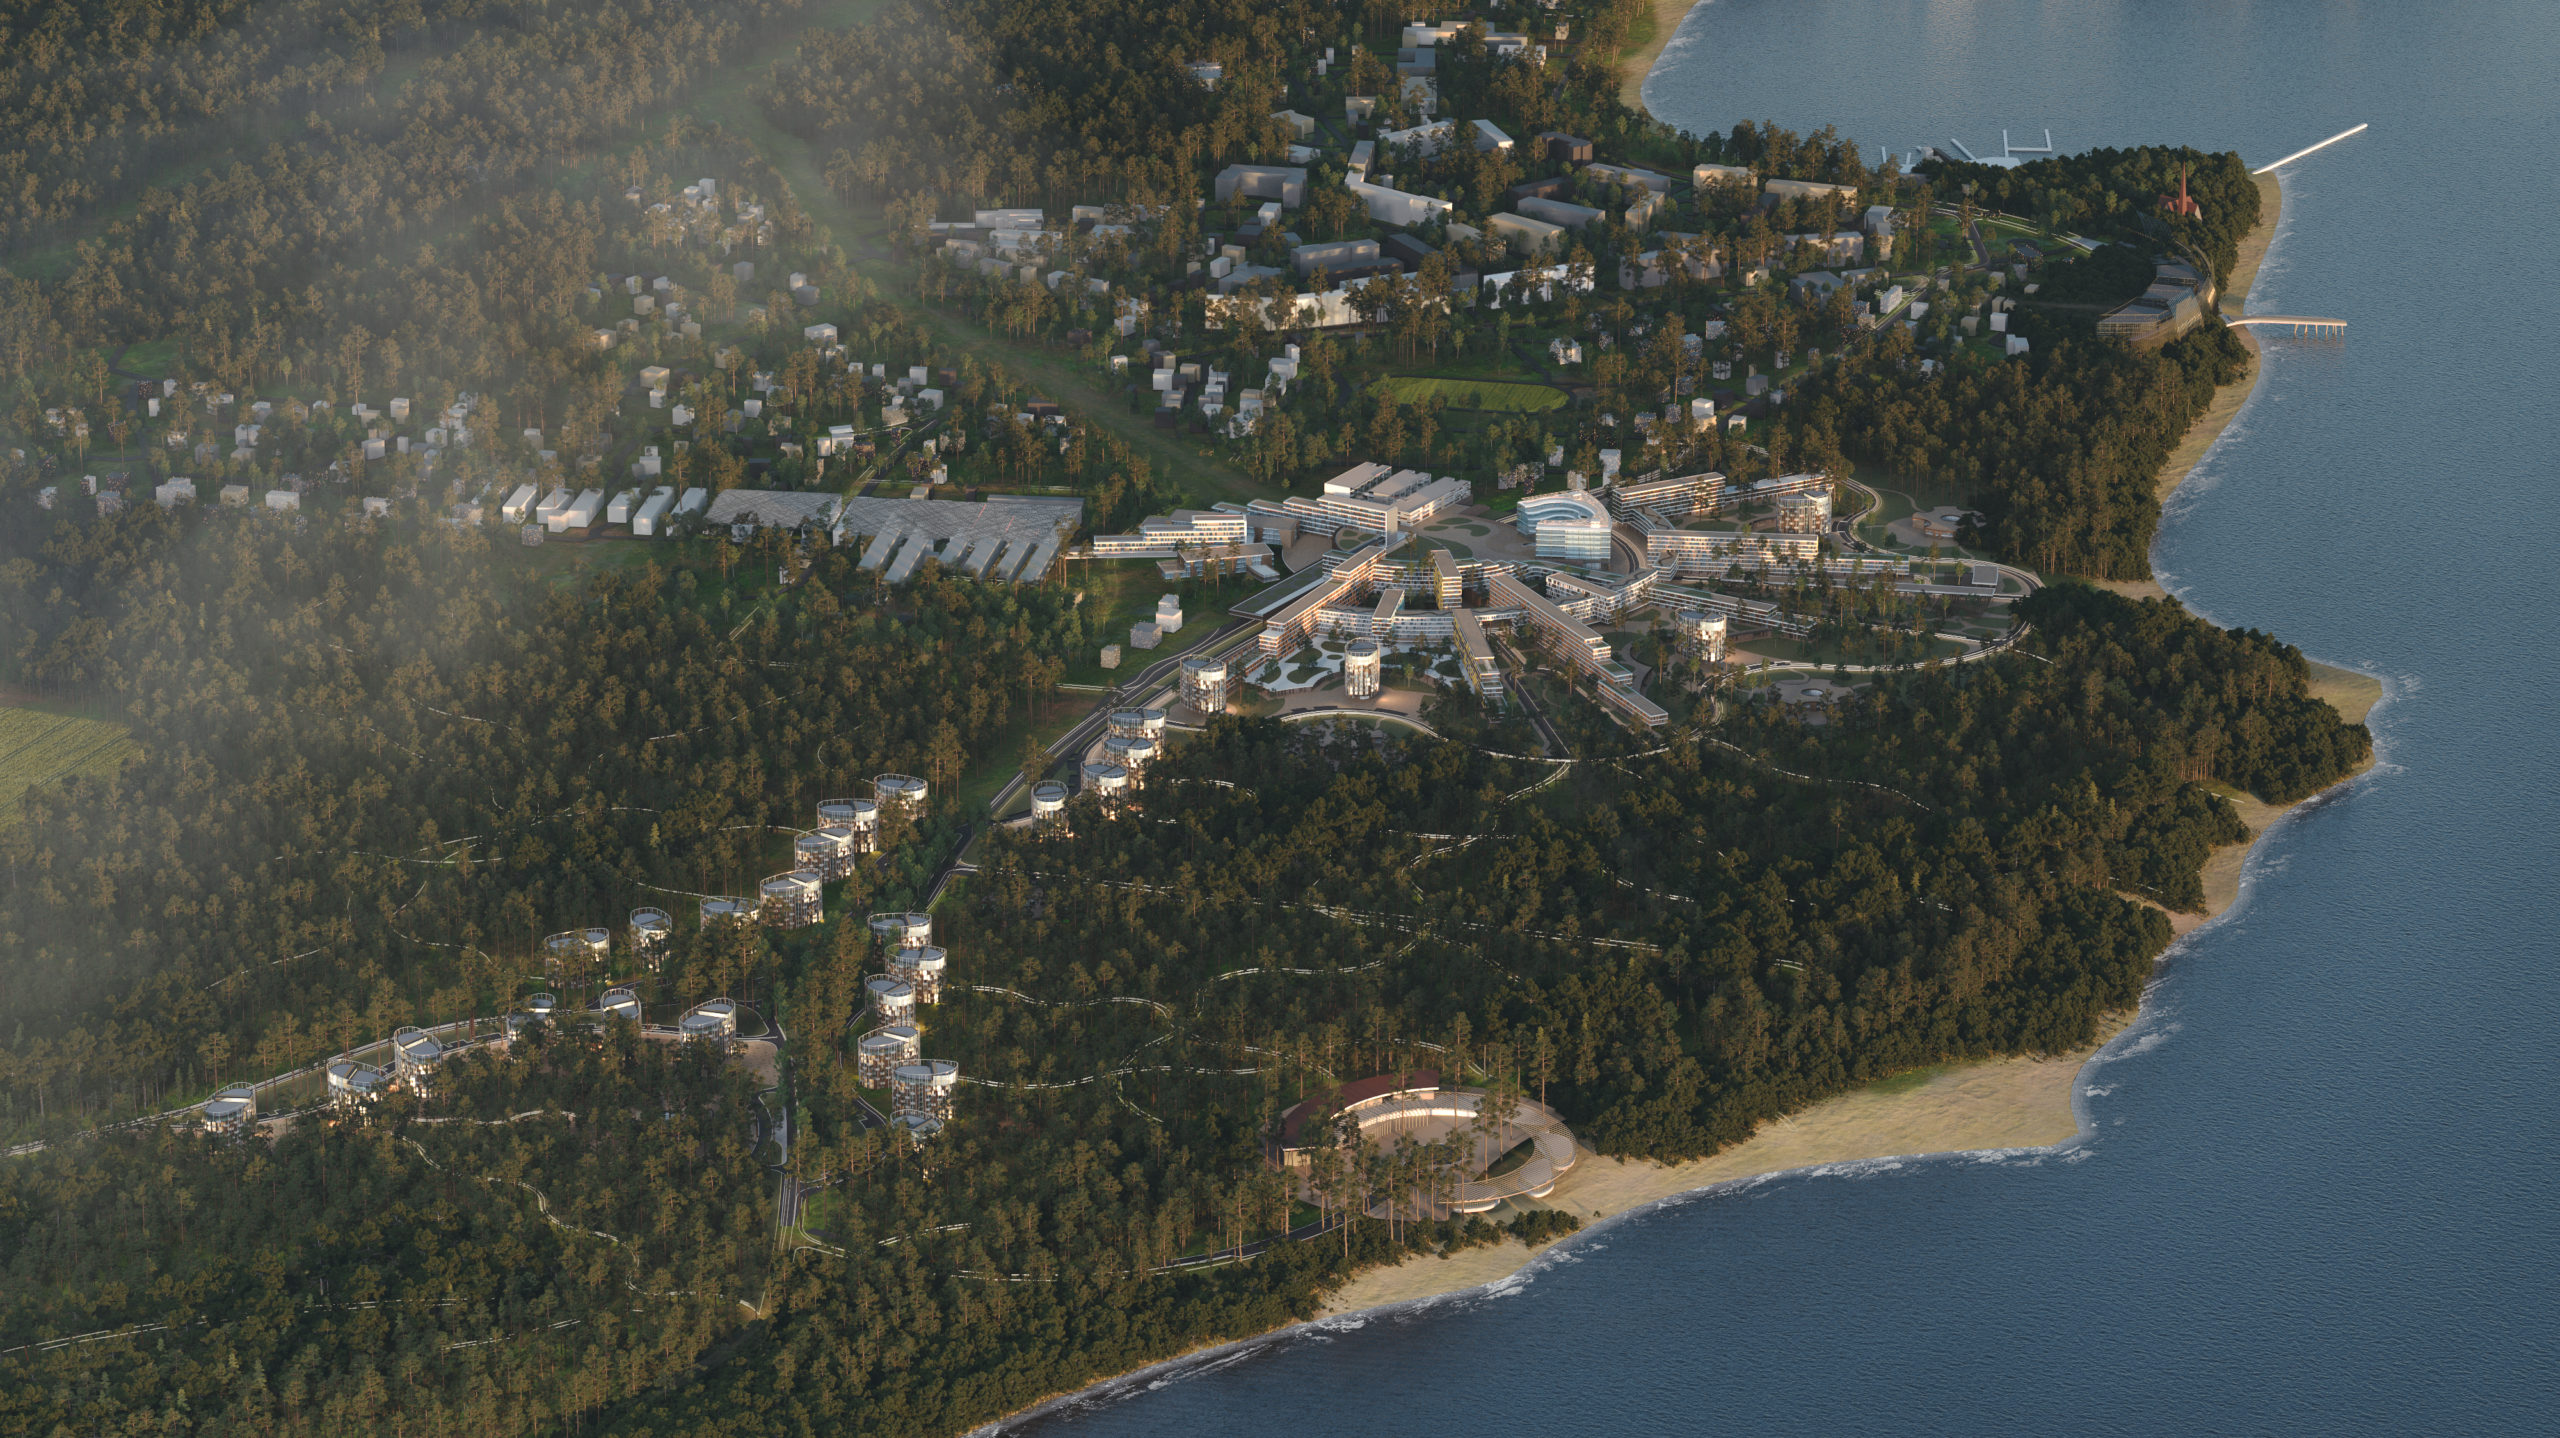 Правительством Ленинградской области утверждена дорожная карта по строительству нового жилого района «Два моря» в городе Приморск